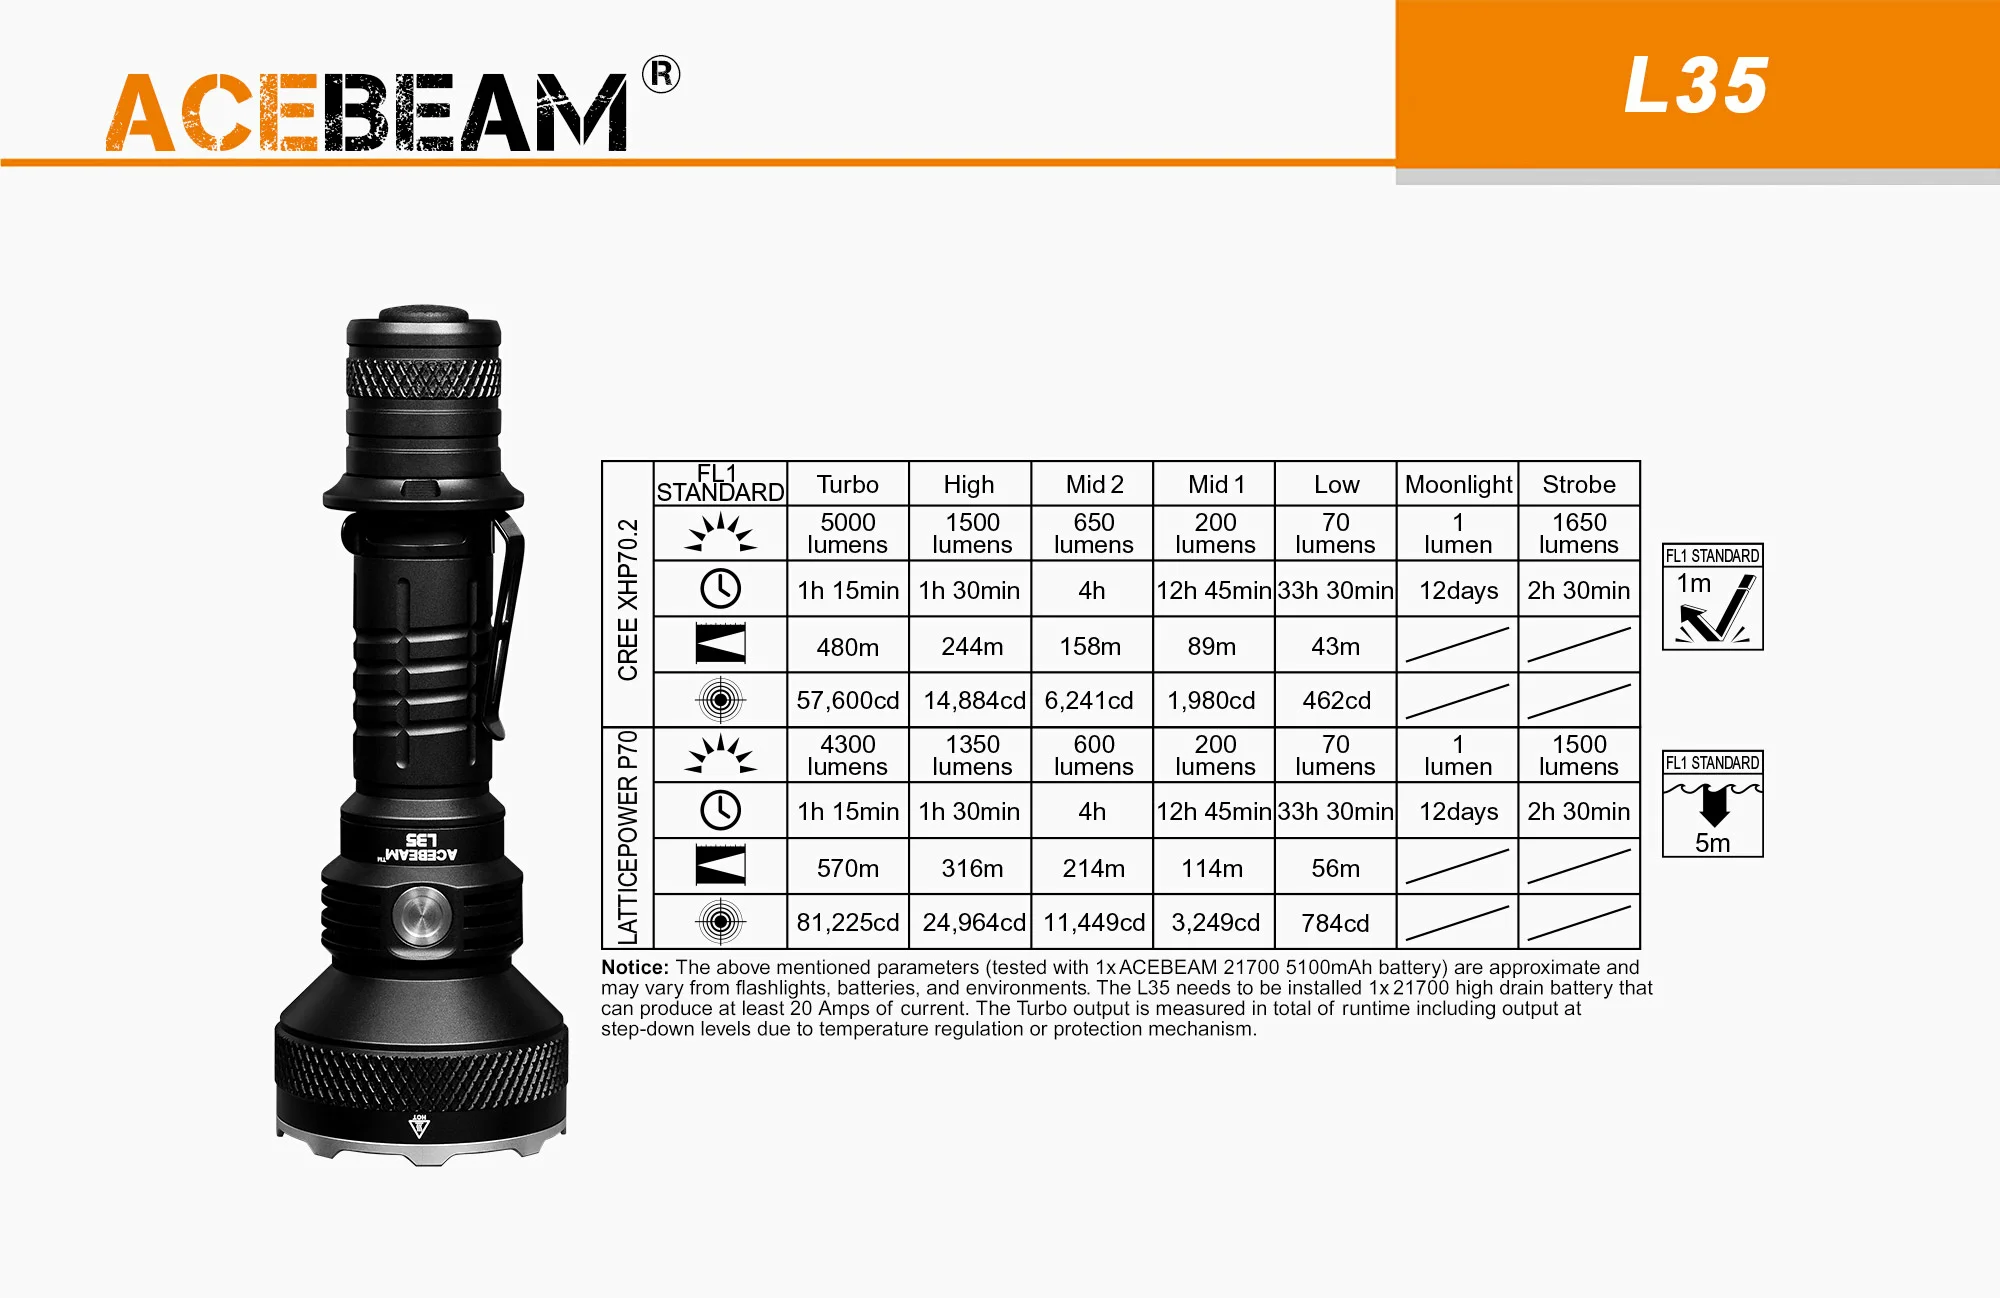 (含電池) ACEBEAM L35 2.0 70.3 LED  5000流明 高亮度LED 戰術手電筒 21700鋰電池 不鏽鋼攻擊頭 露營 登山 探險 原廠公司貨 台灣總代理